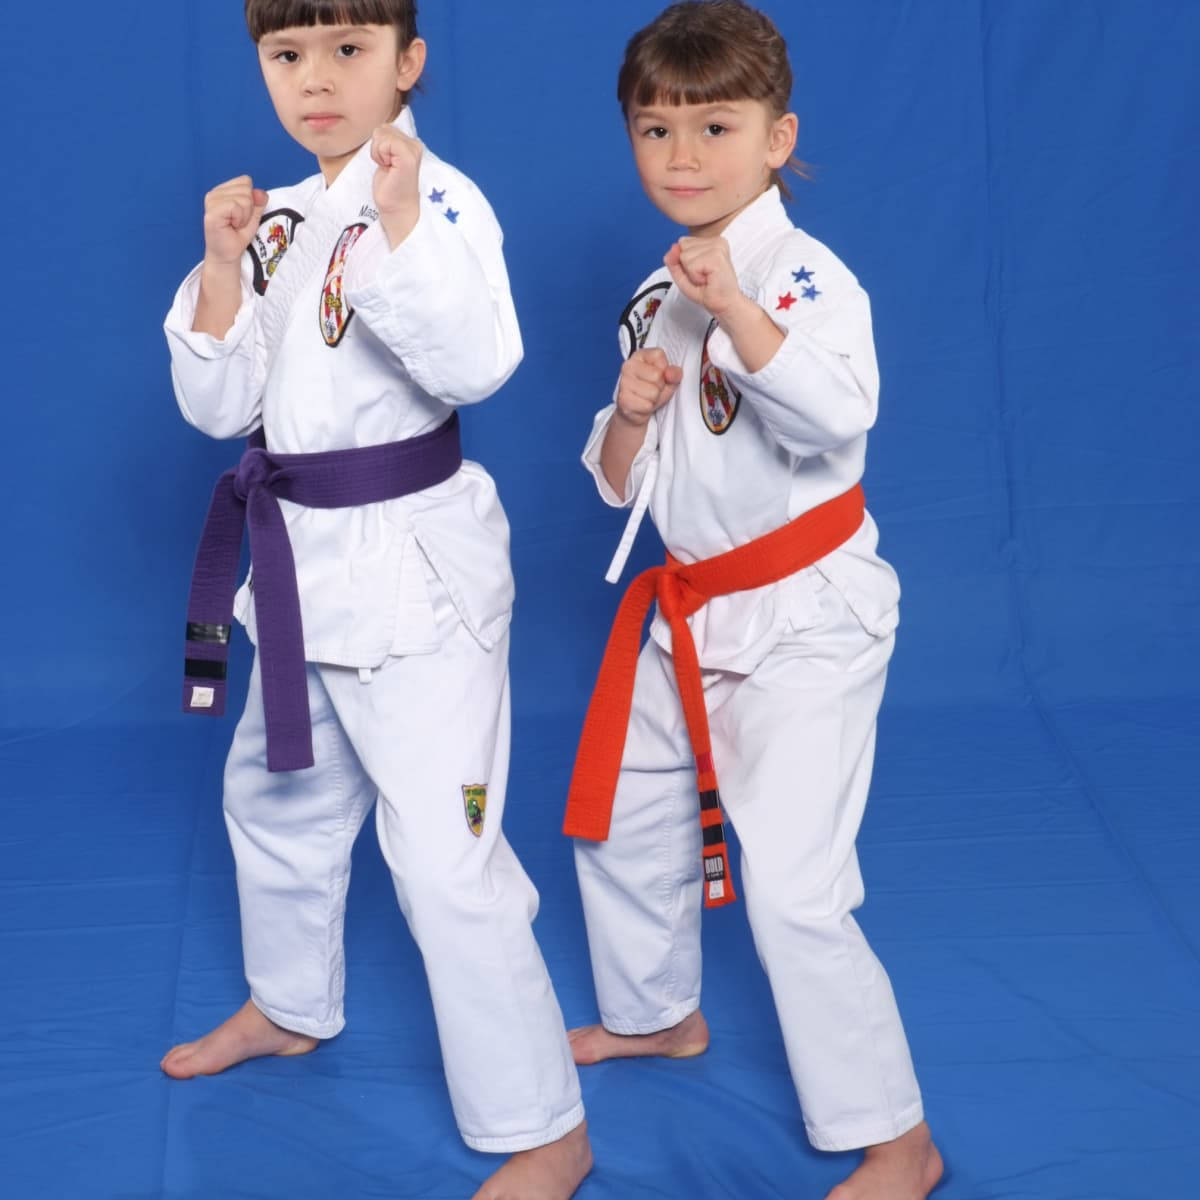 Karatetvå Barn Poserar. Wallpaper